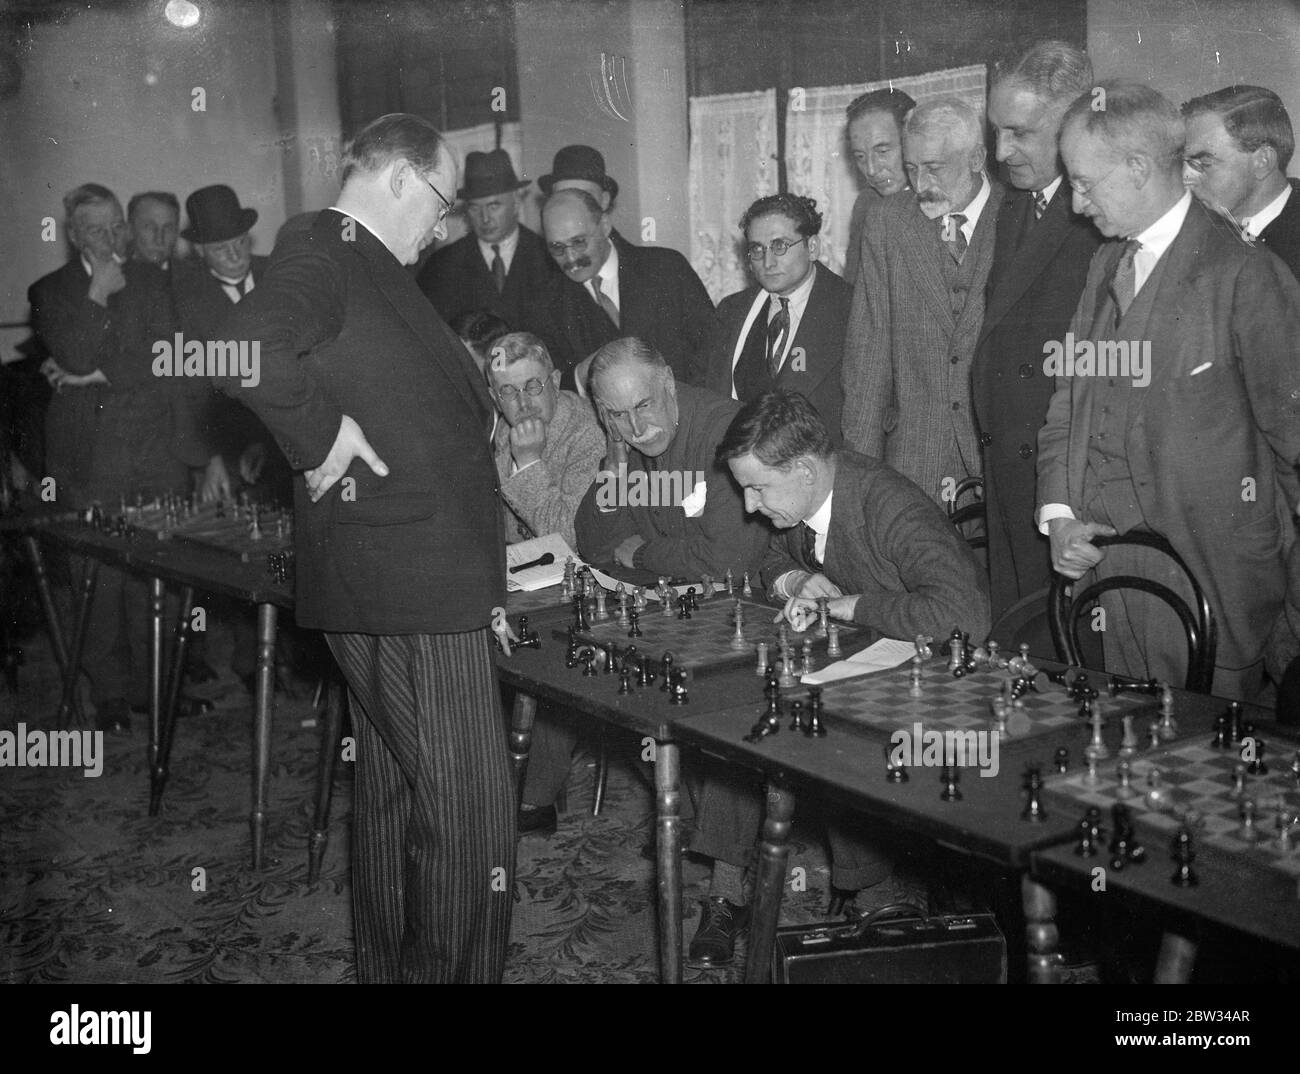 DR Alekhine Schachweltmeister spielt Konkurrenten gleichzeitig in London. Dr. Alekhine, der Schachweltmeister, spielte fünfundzwanzig Konkurrenten auf einmal bei einem Turnier im Empire Chess Club, Bayswater, London. Dr. Alekhine ( stehend ) während seines gleichzeitigen Spiels gegen fünfundzwanzig Spieler im Empire Chess Club . 29. Januar 1932 Stockfoto